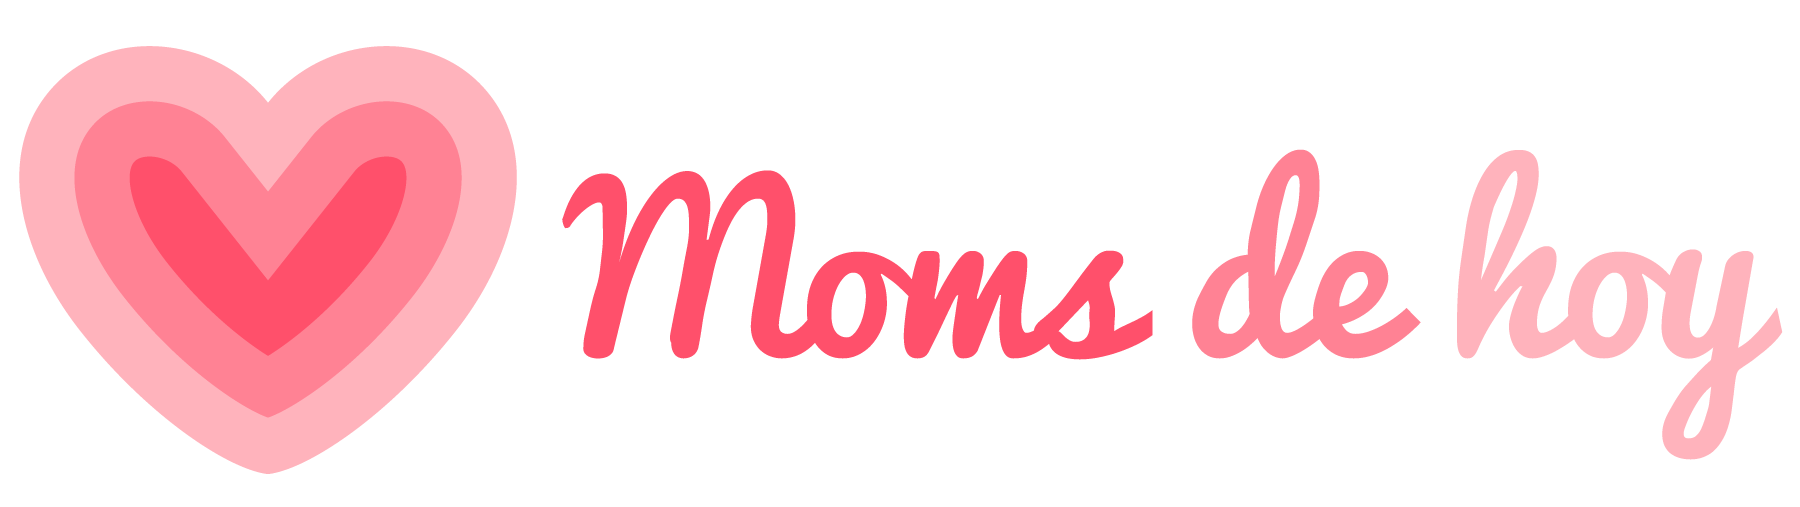 Moms de hoy - Logo